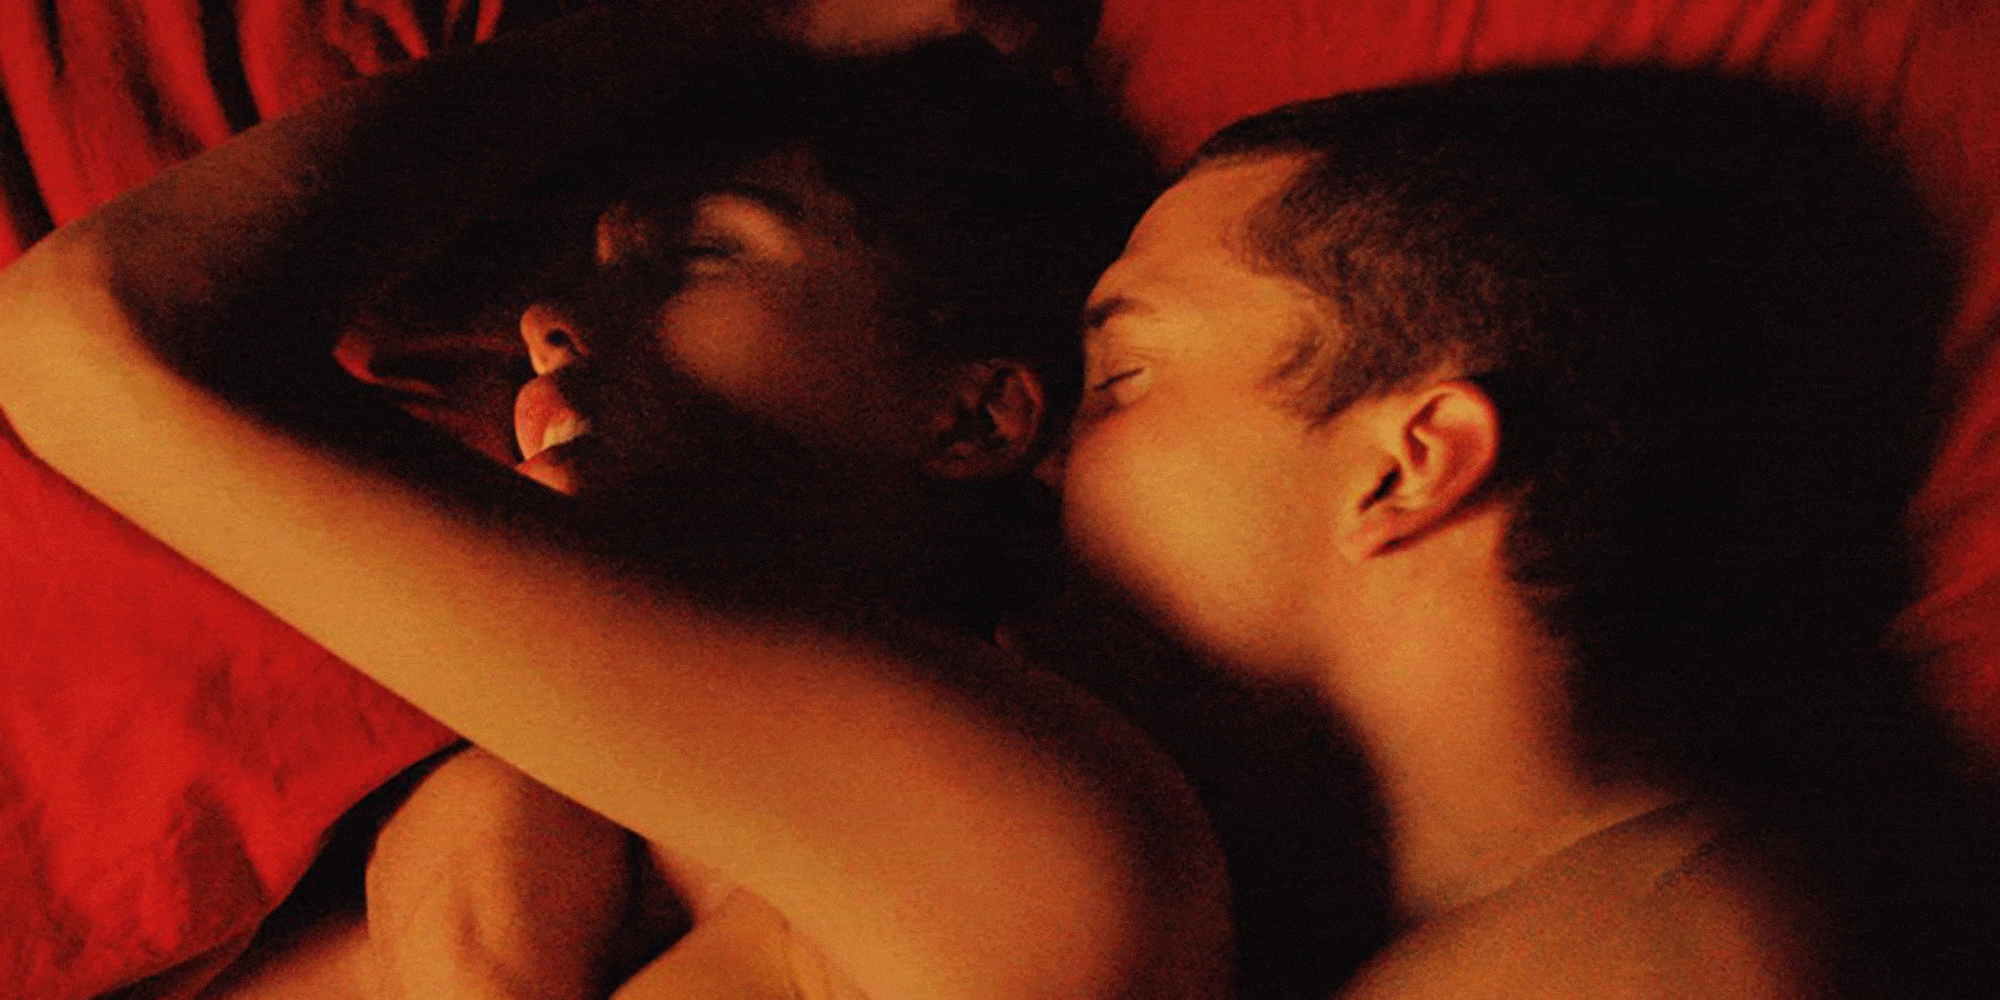 Sexy Black Sex Scenes - Netflix sex shows - 41 Netflix sex scenes hotter than porn